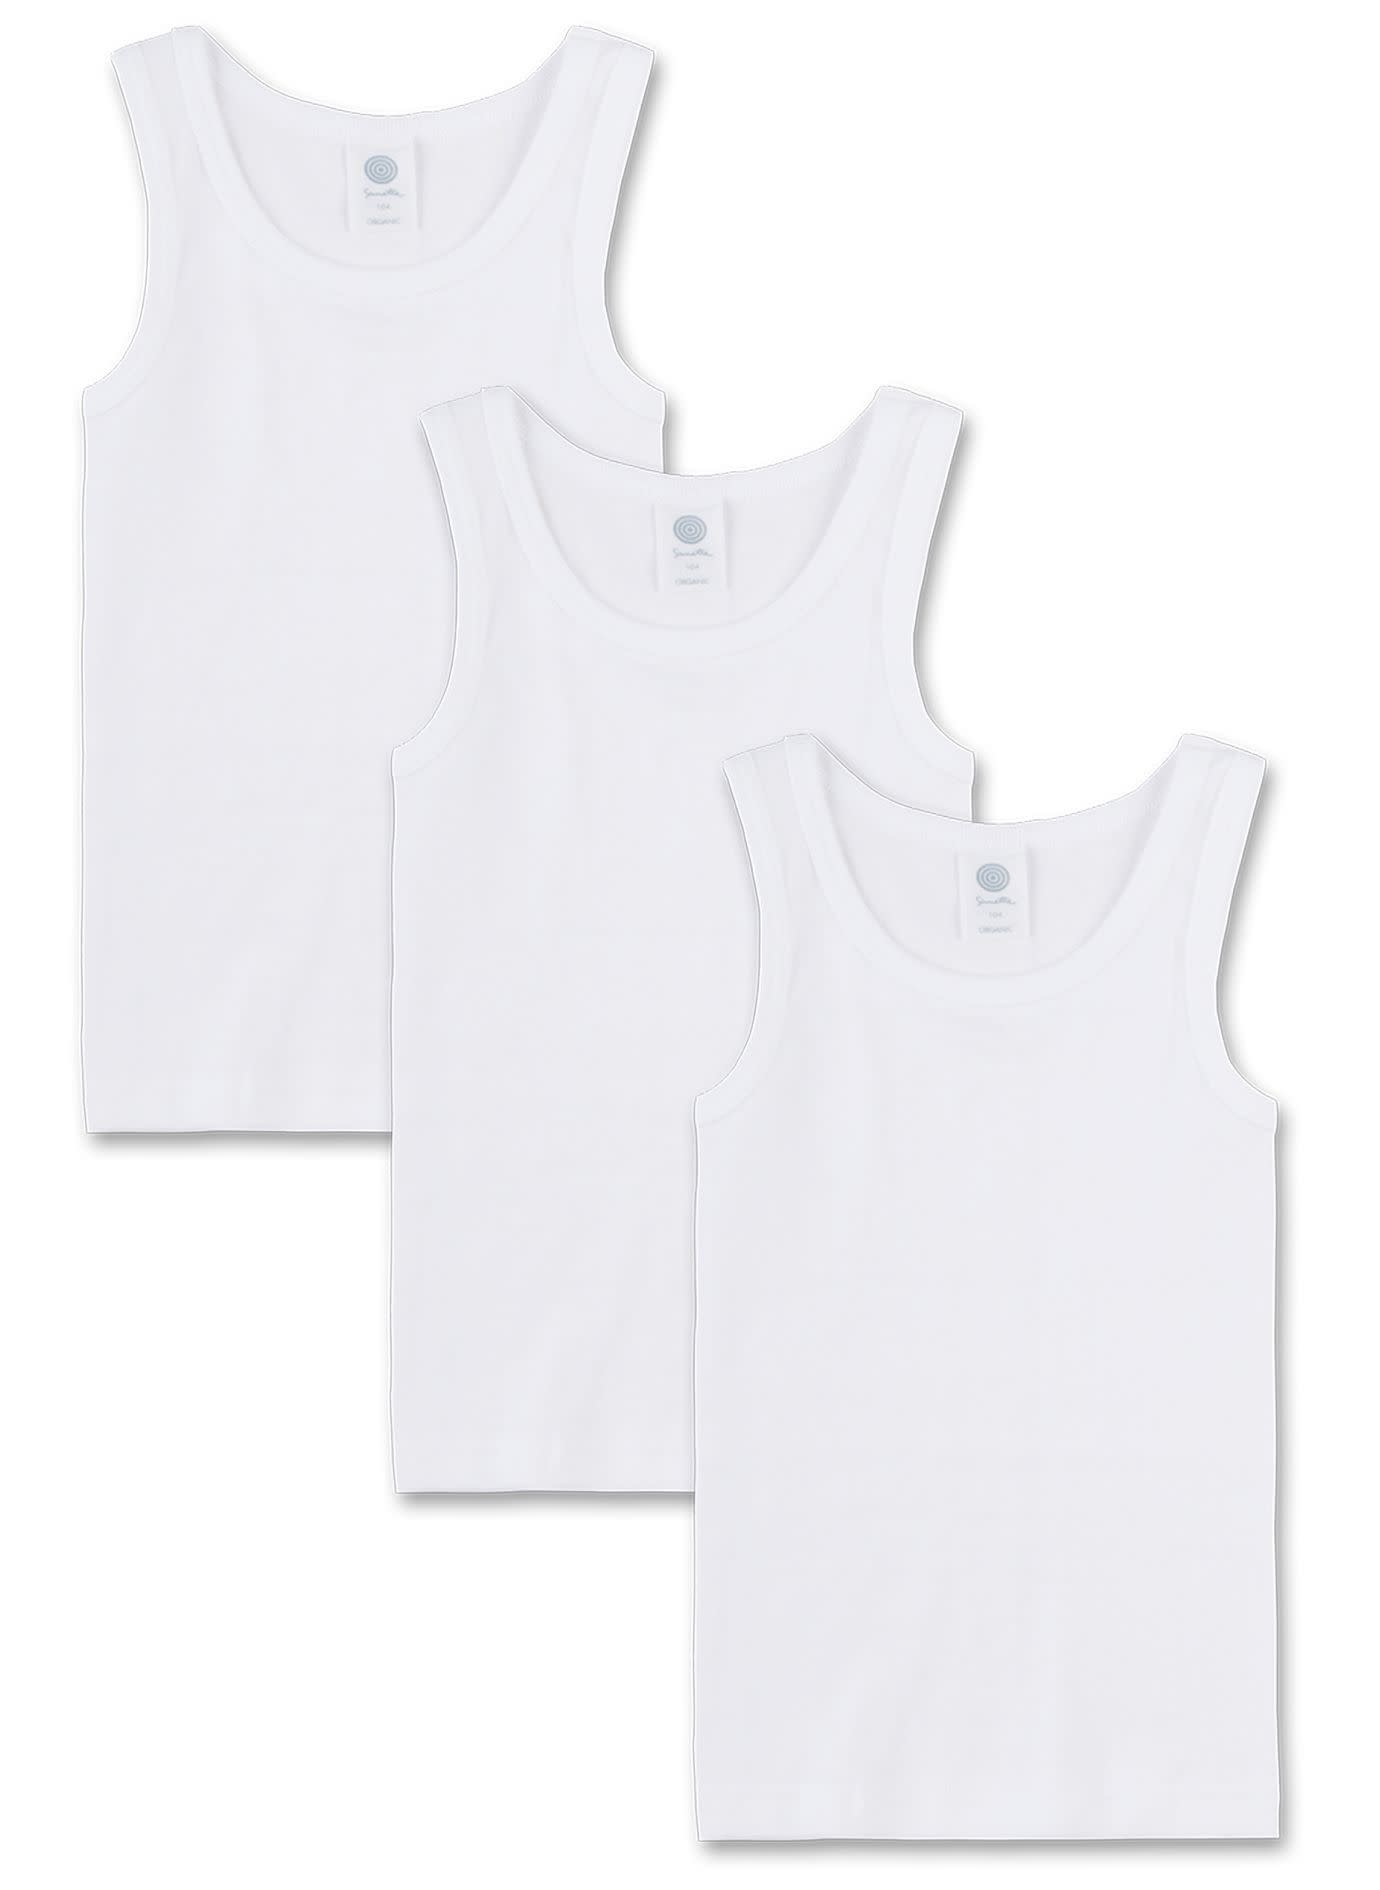 Boys undershirt (pack of three) white | Sanetta Canada - Kidz Global ...